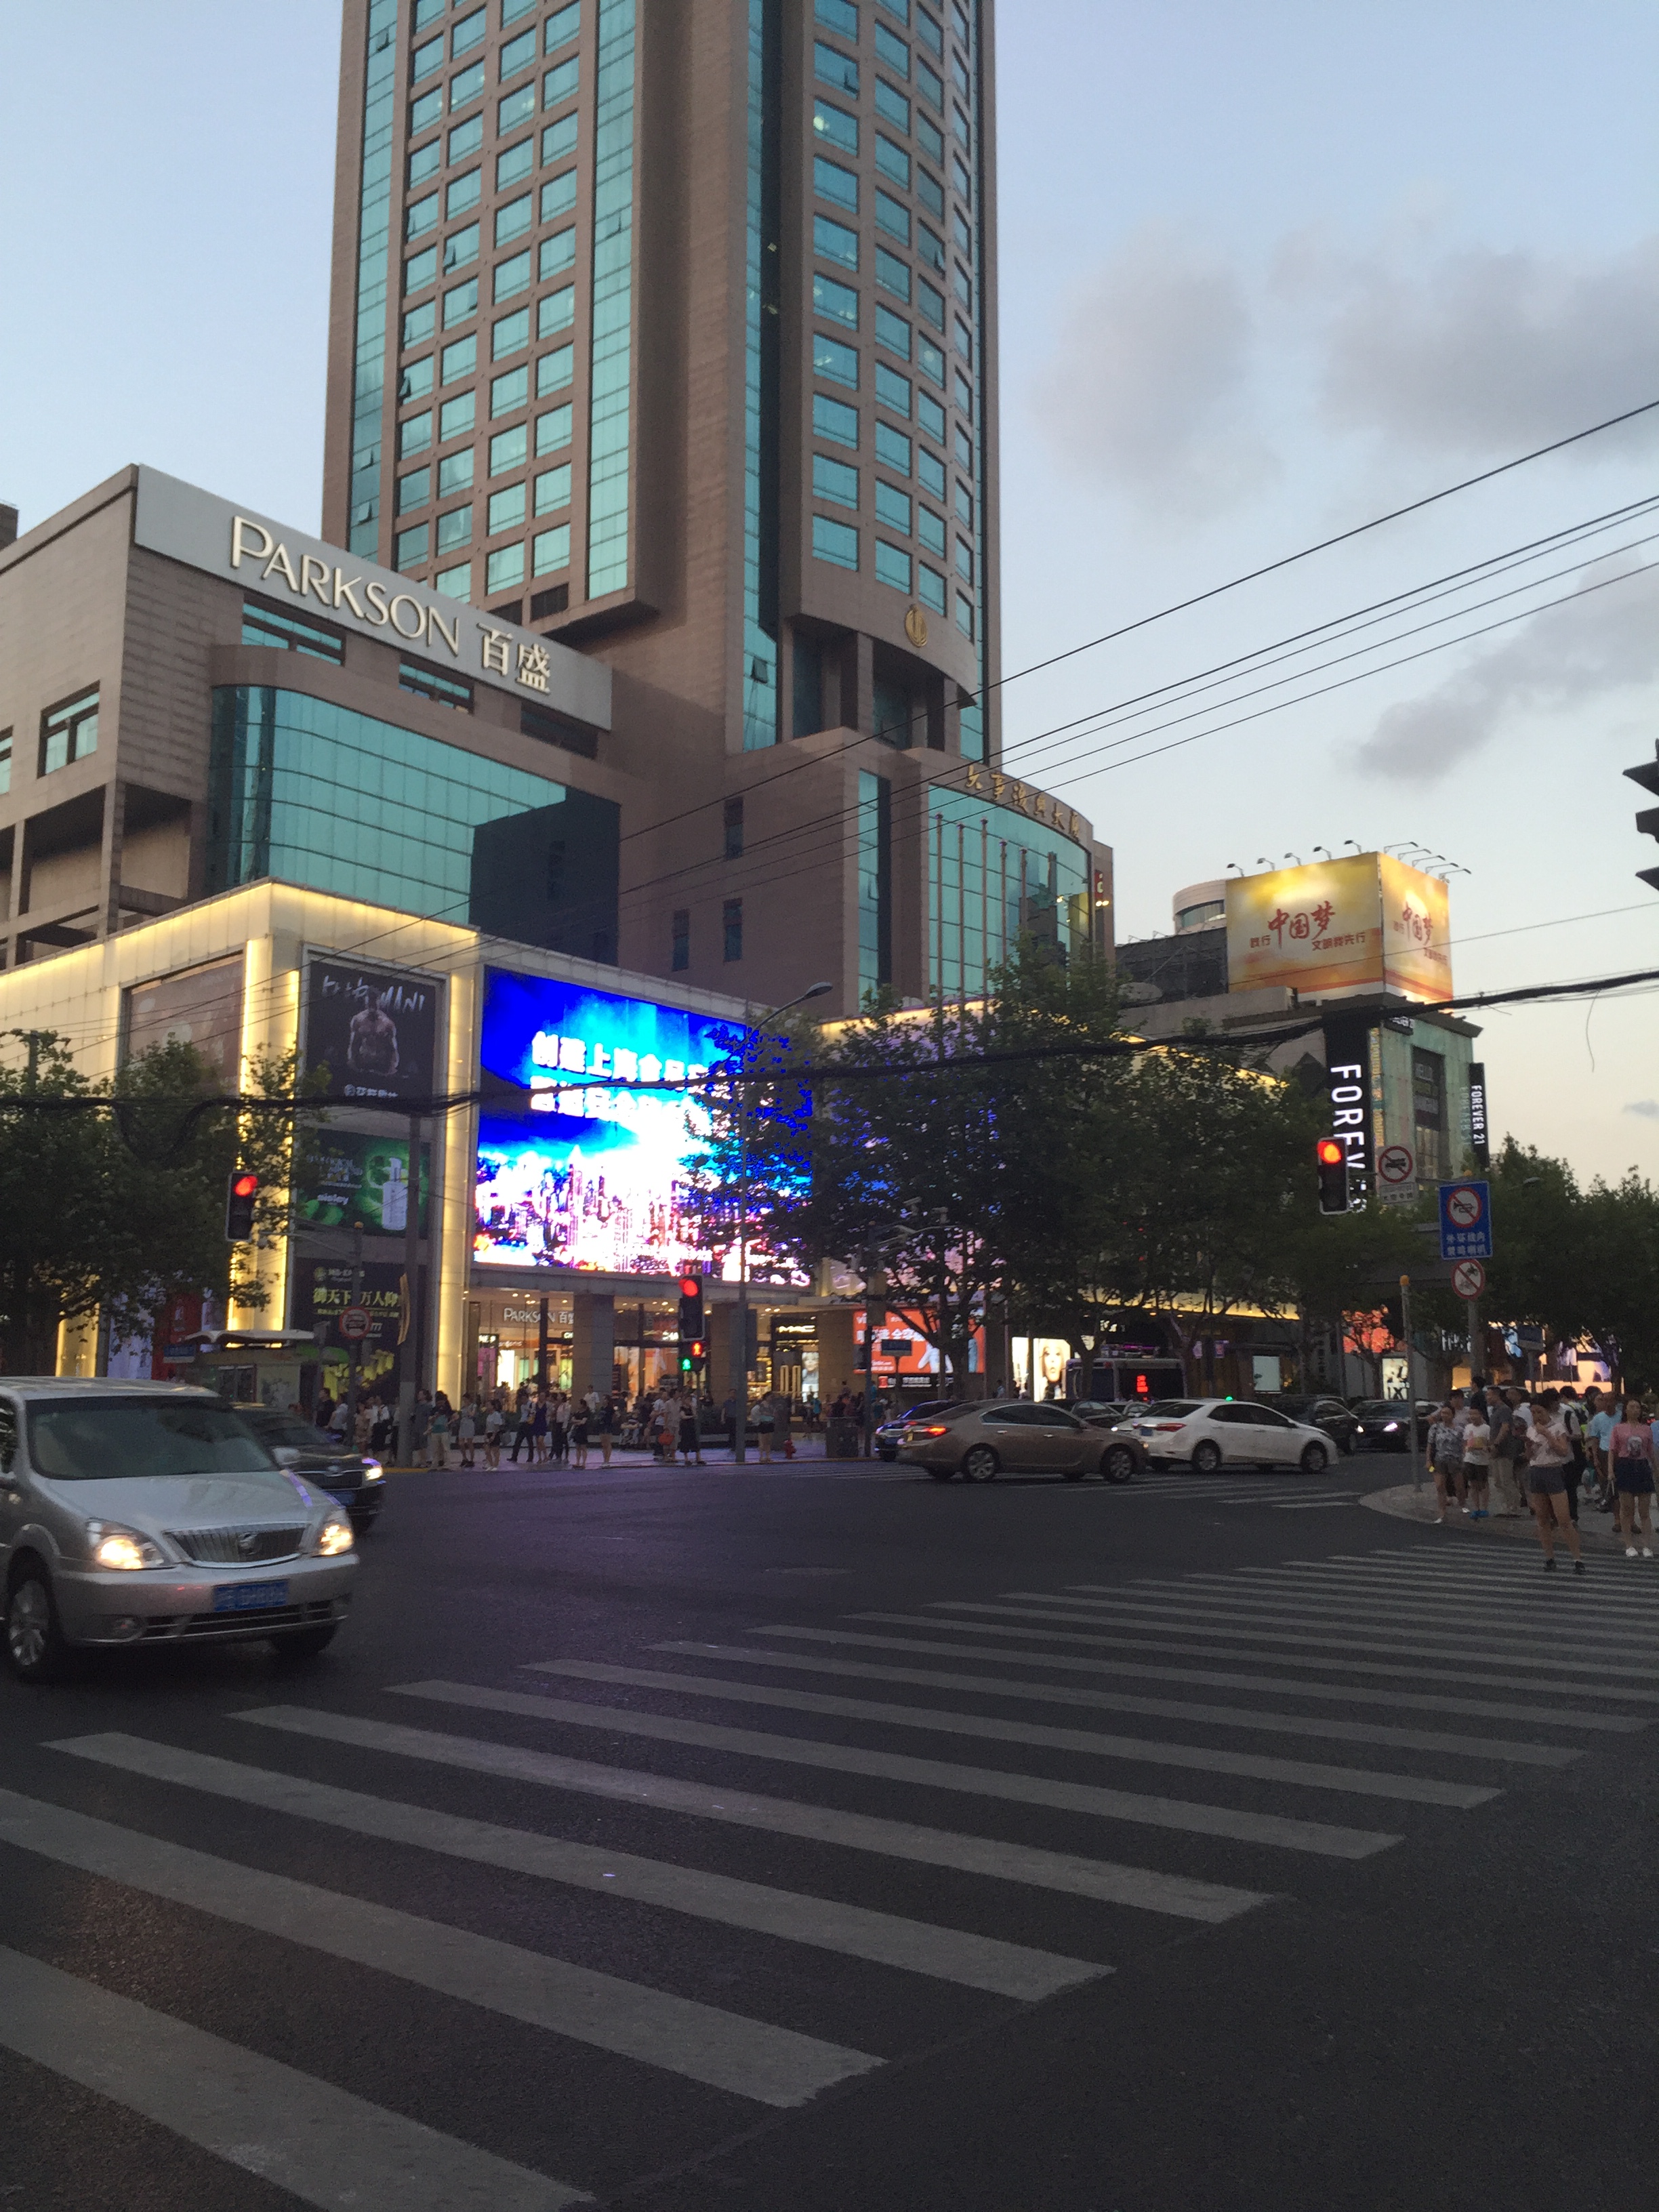 【携程攻略】上海淮海路商业街适合单独旅行购物吗,路